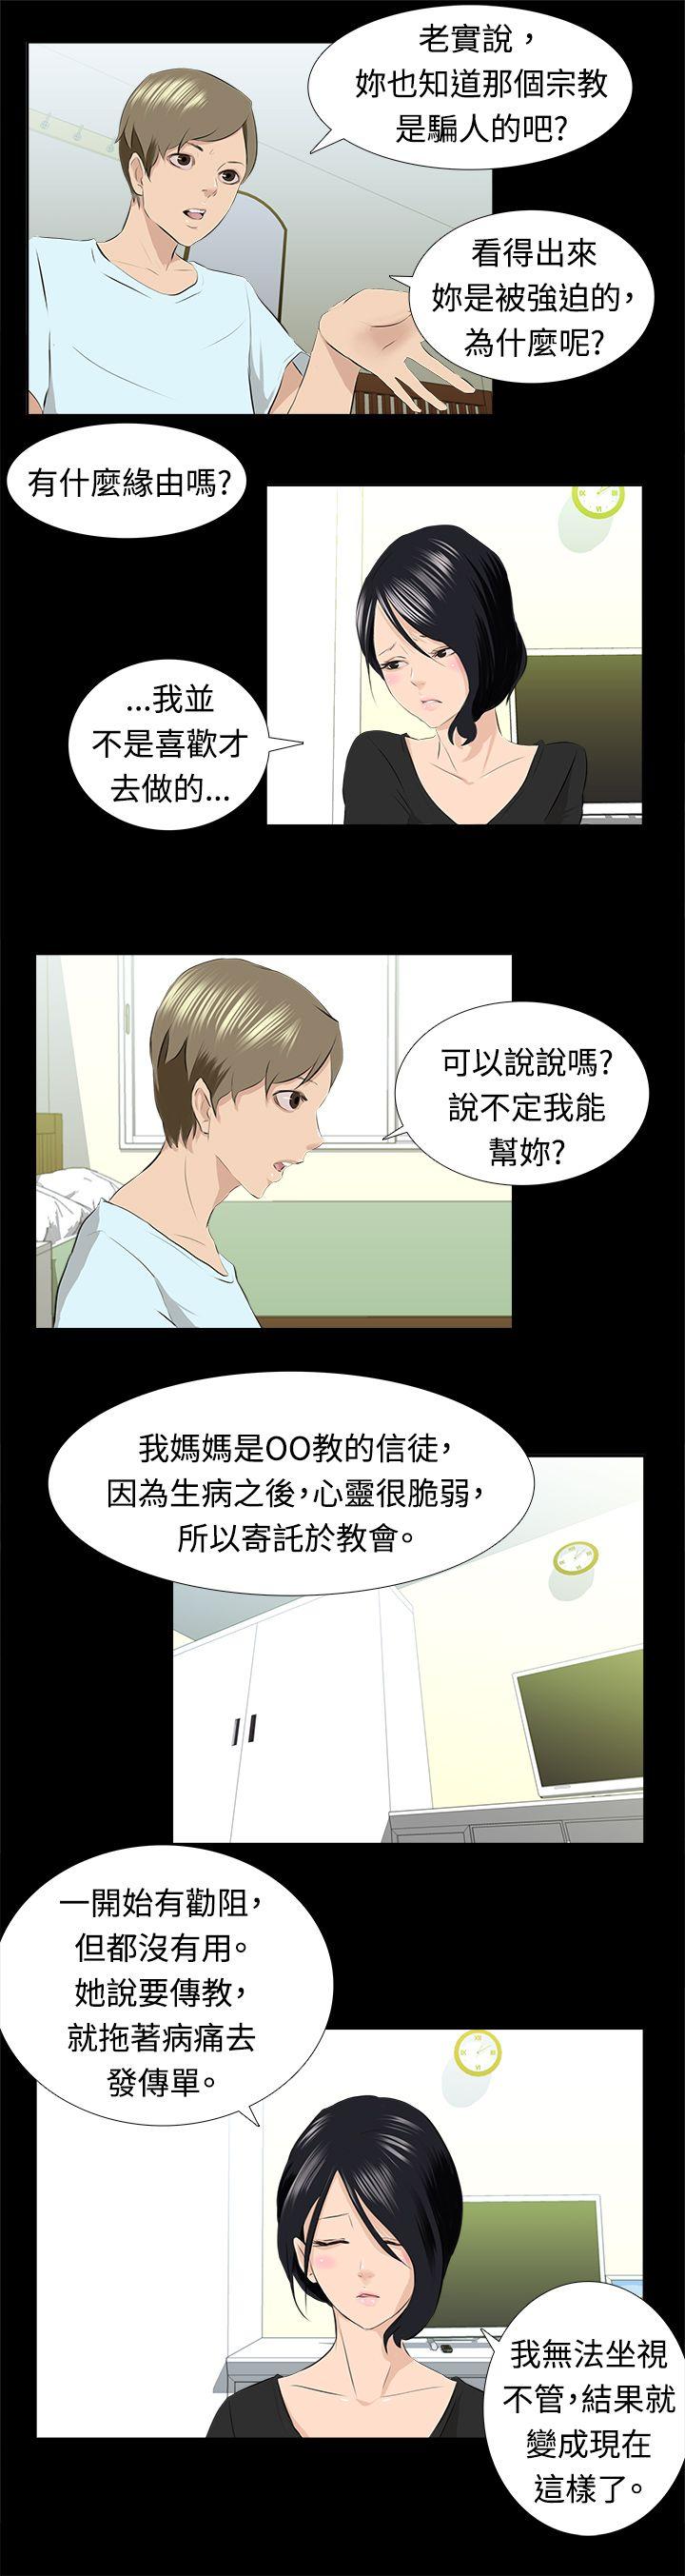 秘密Story  邪教之女(上) 漫画图片9.jpg